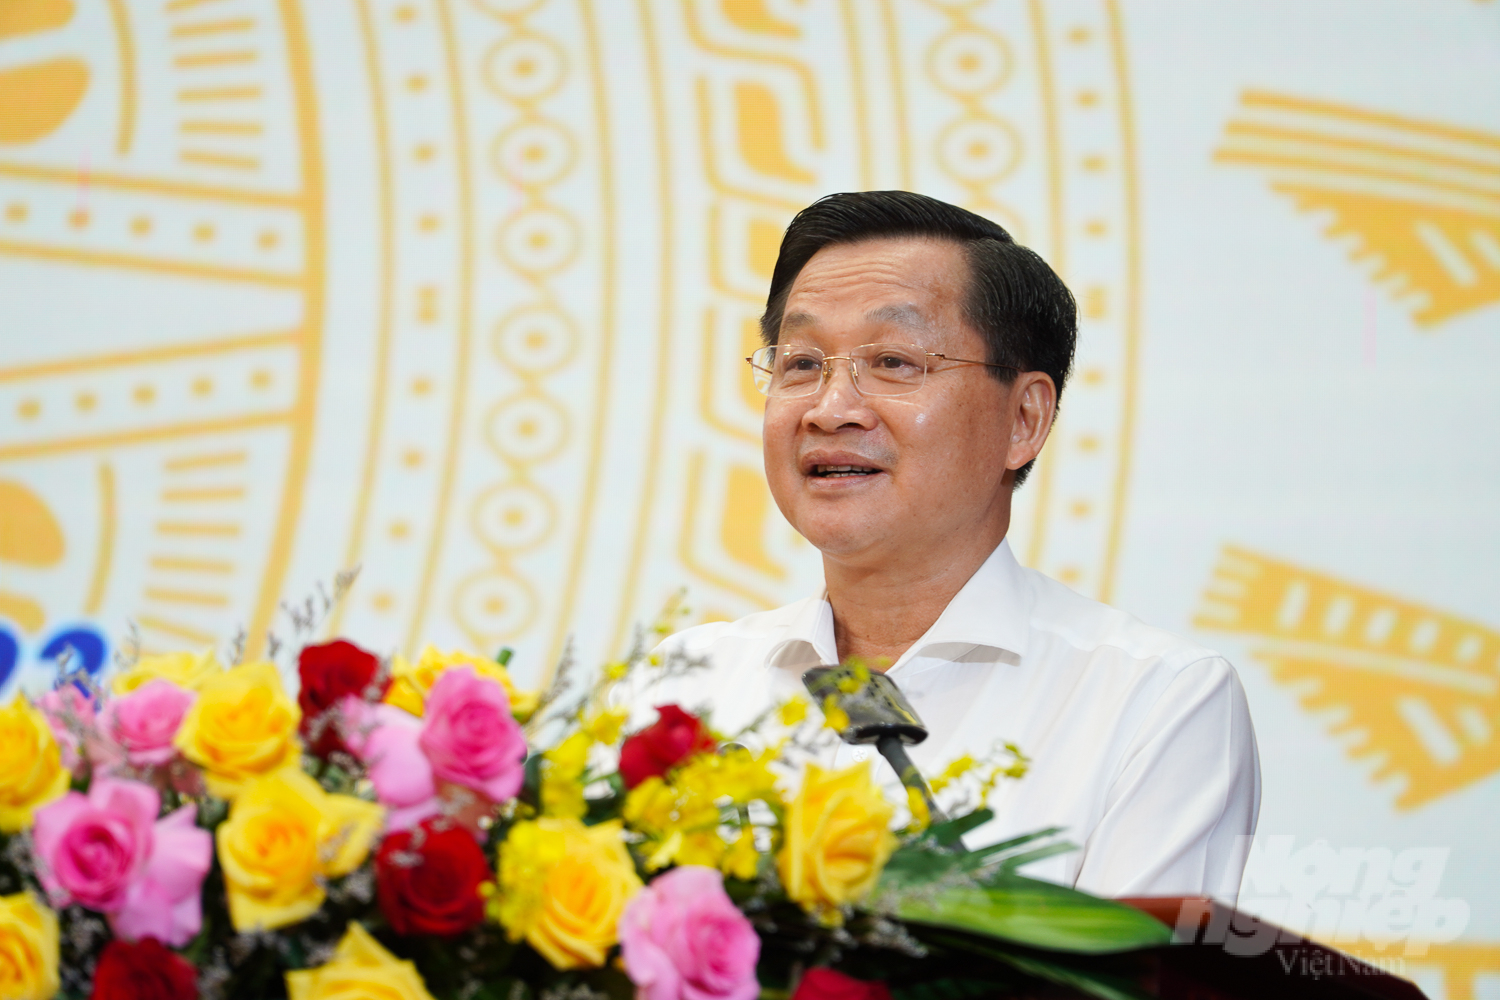 Phó Thủ tướng Chính phủ Lê Minh Khái xác định, Quy hoạch tỉnh Sóc Trăng là cơ sở để địa phương triển khai các định hướng chiến lược phát triển, liên kết chặt chẽ với các tỉnh, thành vùng ĐBSCL. Ảnh: Kim Anh.